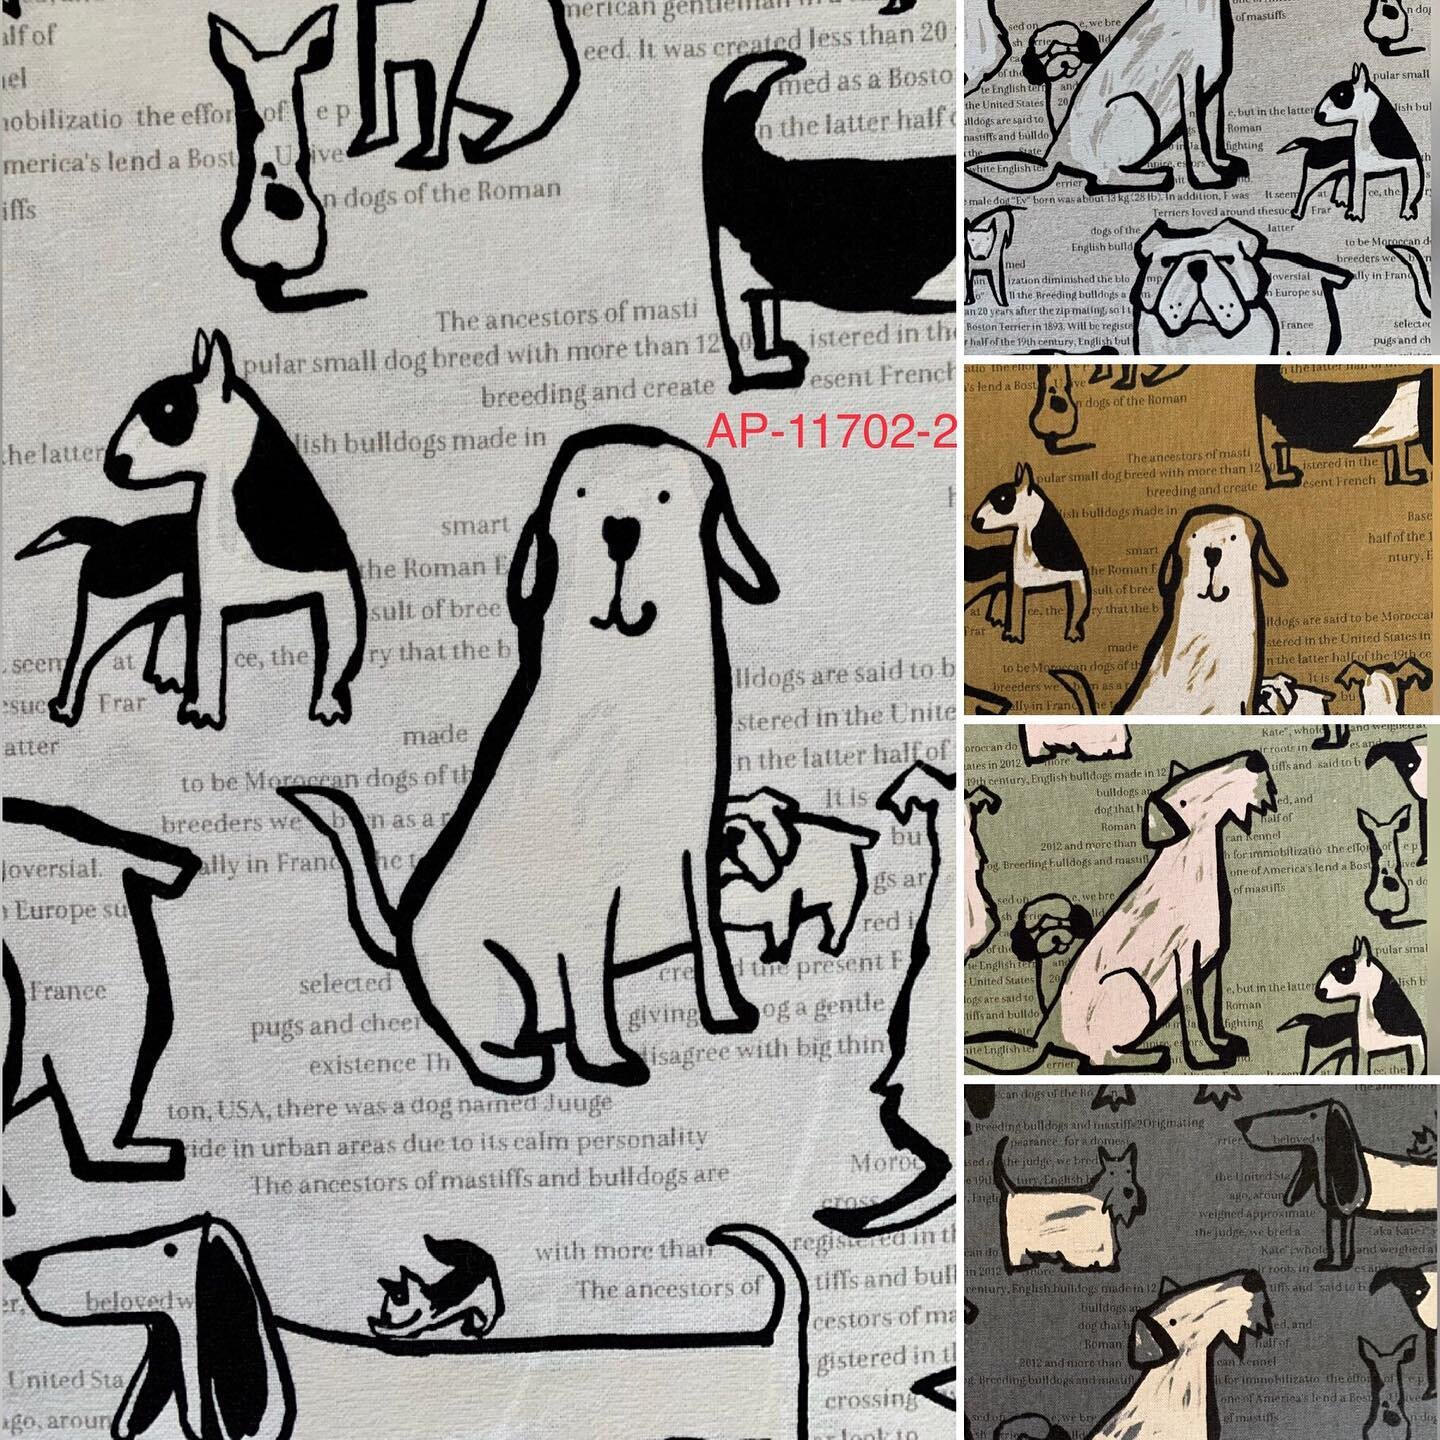 Kawaii dogs on newsprint. C/L-80/20 light canvas from Cosmo. Multiple colorways in stock now.
&bull;
&bull;
#orimonoimportscottonlinen #orimonoimportskawaii #orimonoimportsanimals